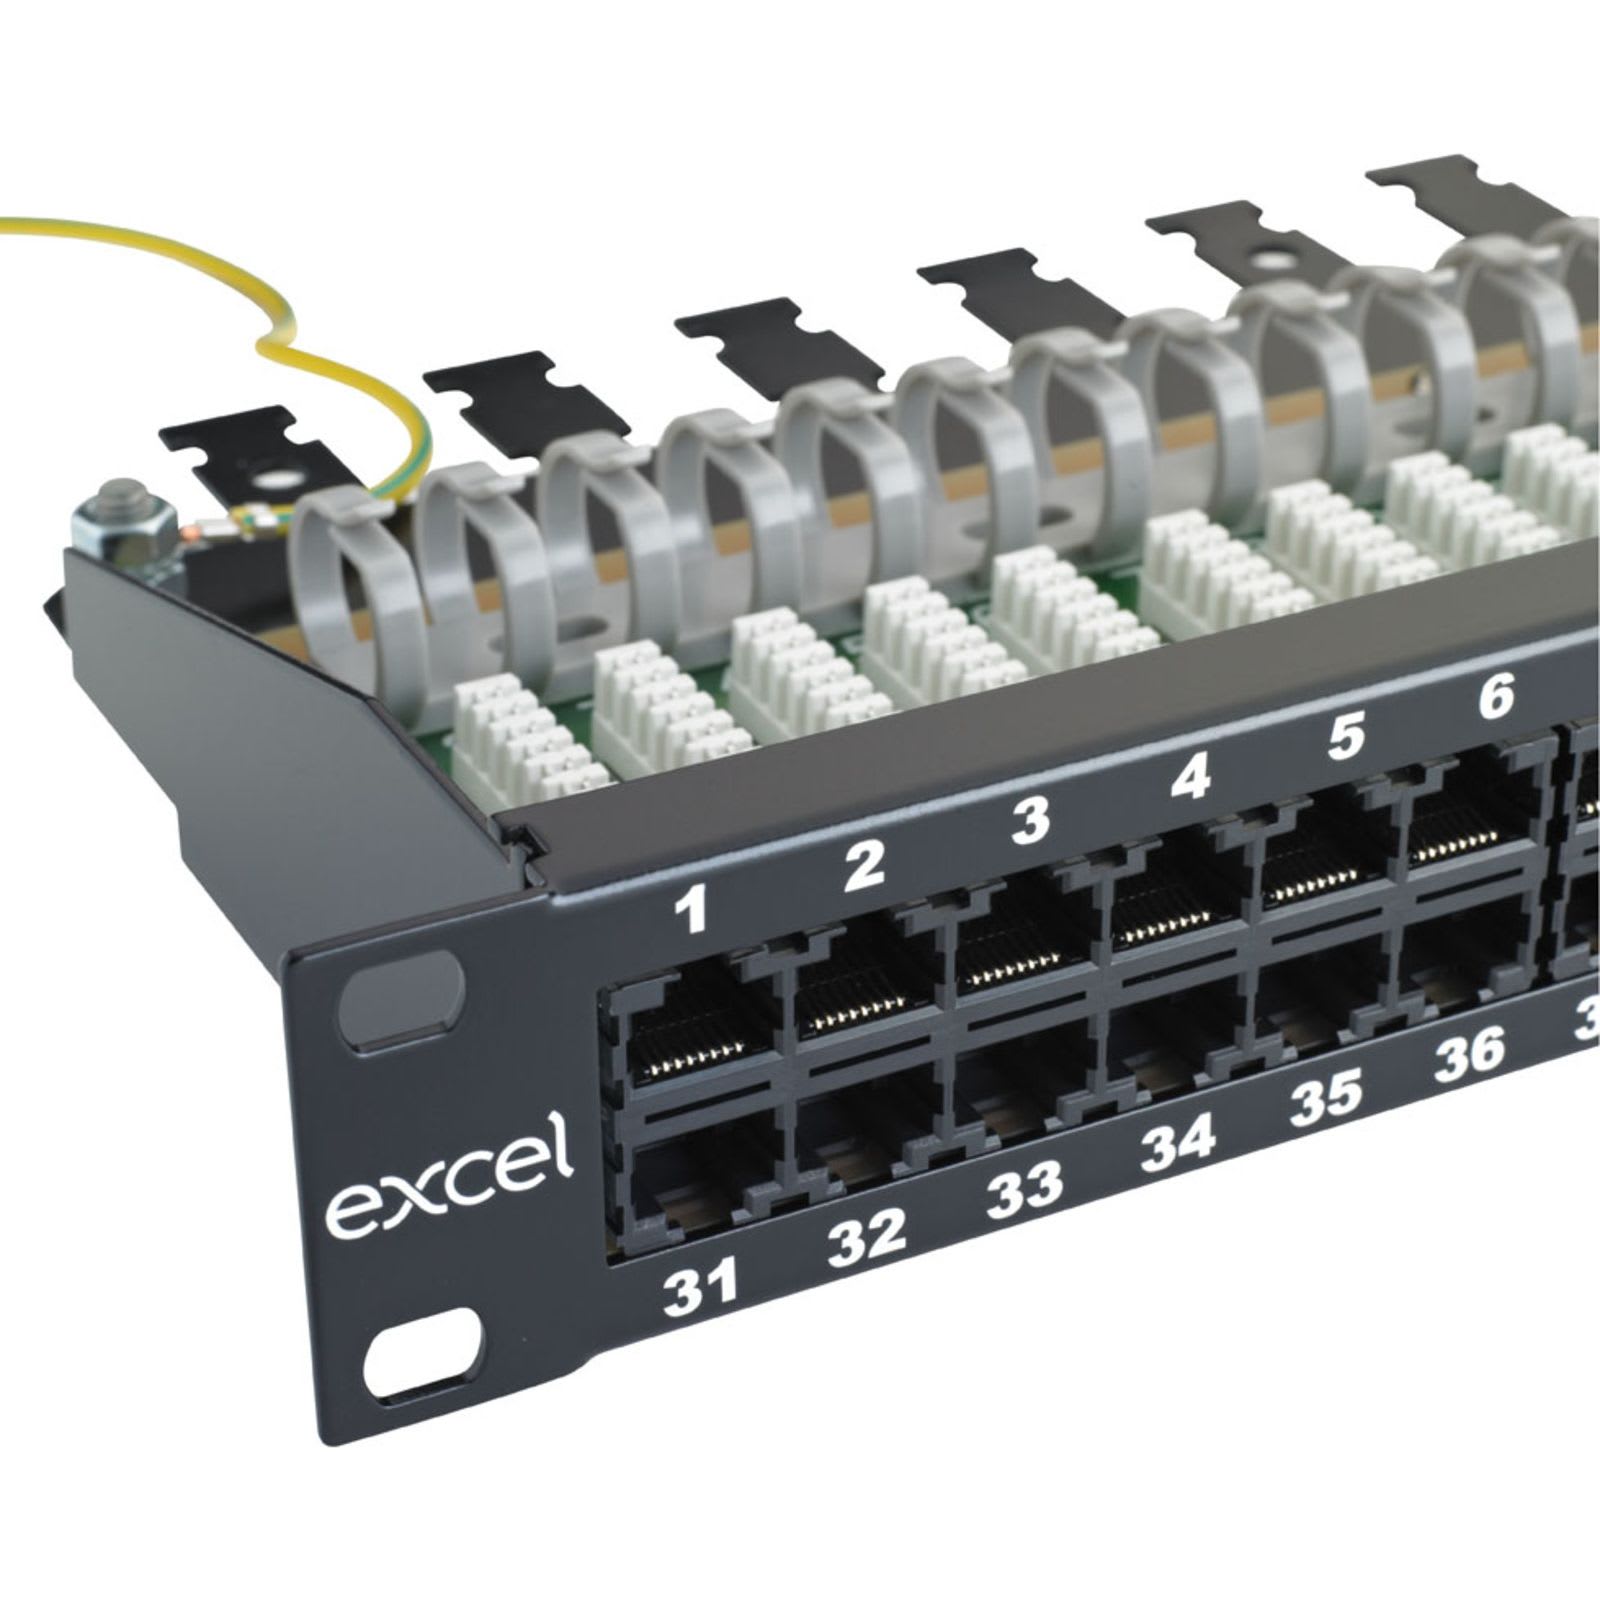 Excel Networking Solutions - Panneau téléphonique RJ45 25 ports 3 paires 1U, noir